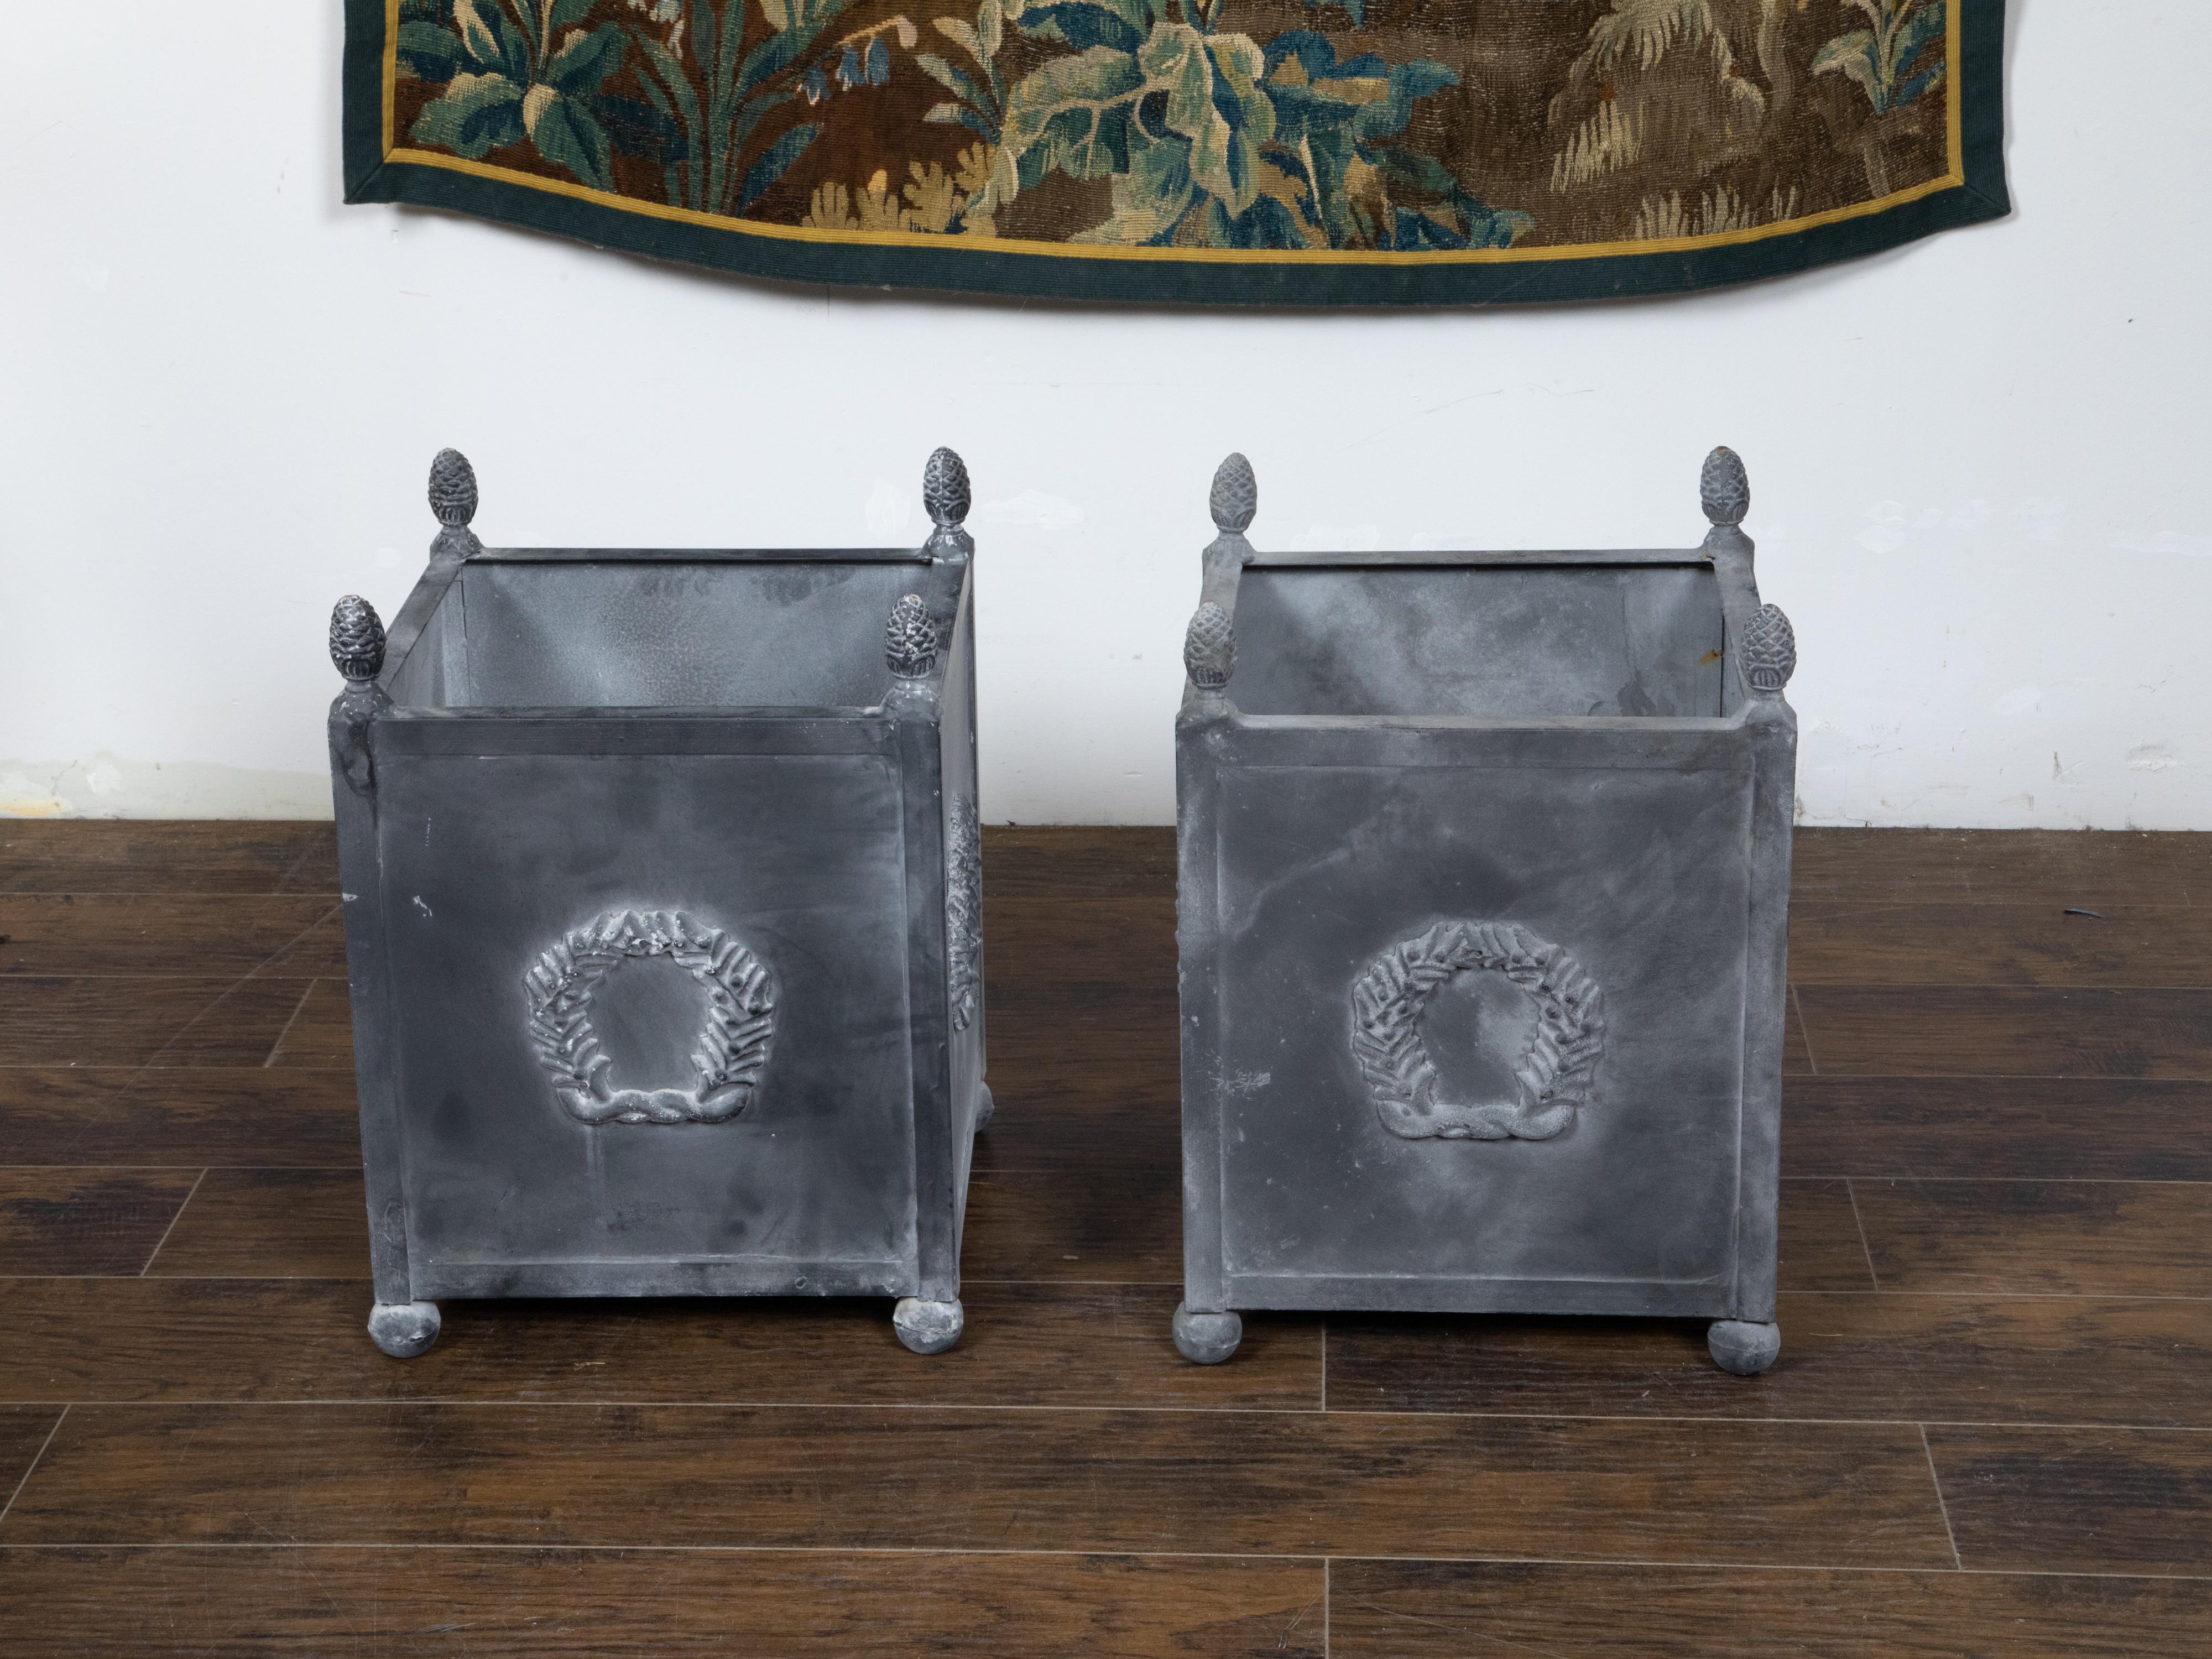 Paire de cache-pots en métal d'inspiration néoclassique du 20e siècle, de couleur grise patinée, avec motifs de couronnes de laurier, glands et petits pieds boules. Fabriquée aux États-Unis au cours du XXe siècle, cette paire de jardinières en métal